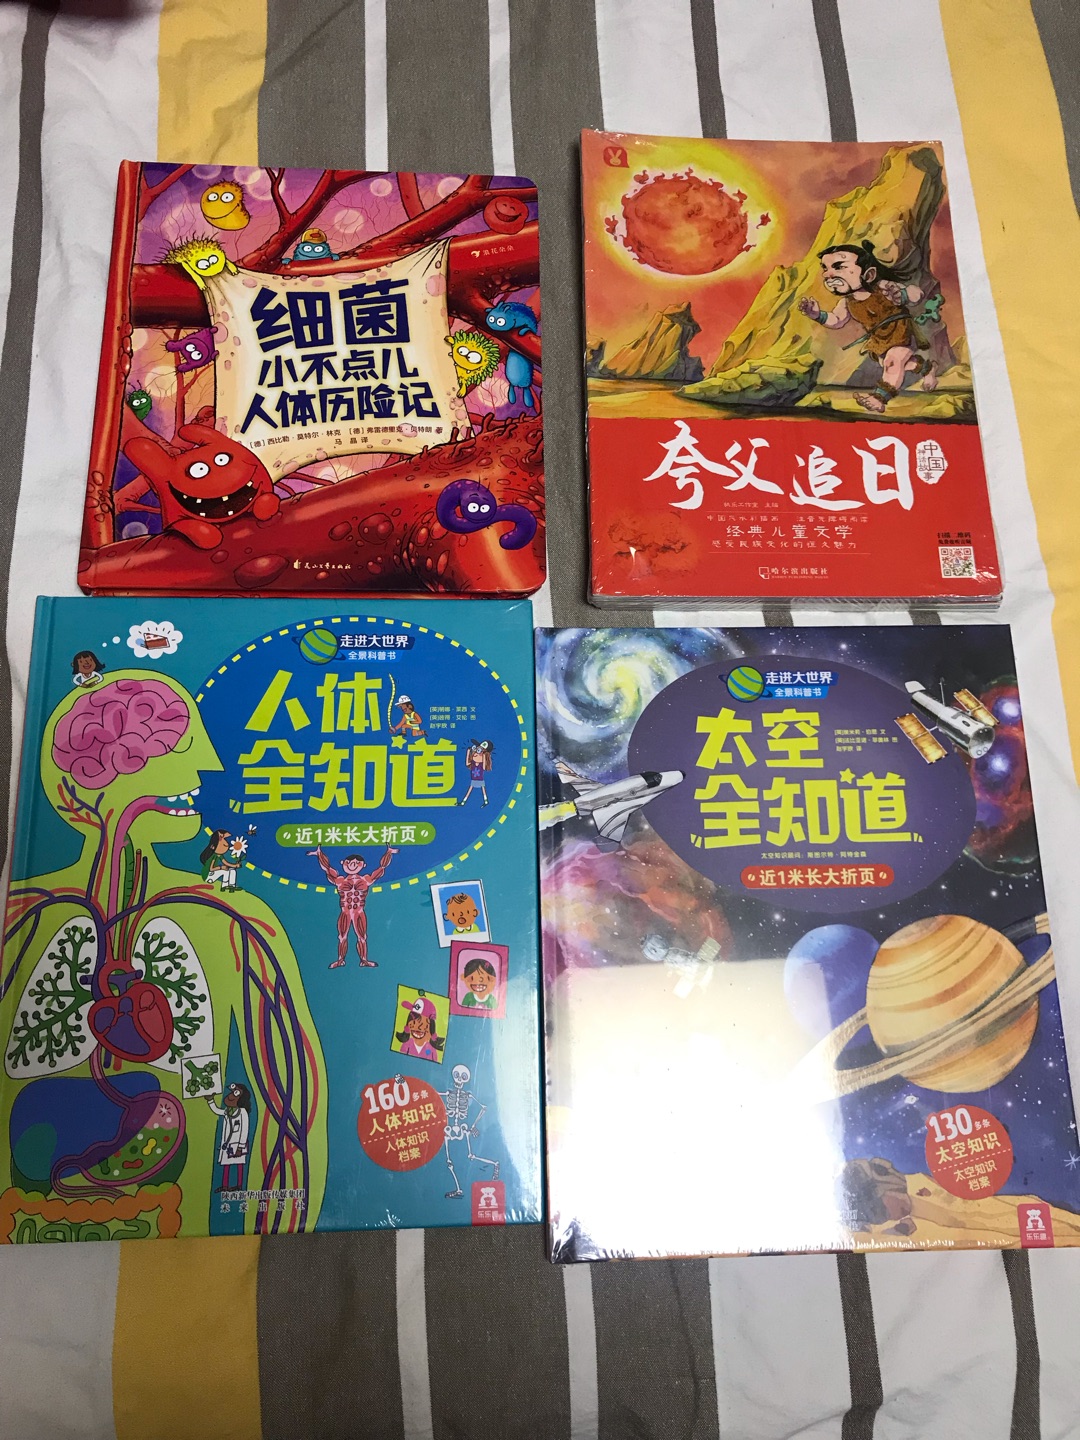 中国历史，经典文学，每个小朋友都一定要拥有，都应该诵读。制作精良，丰富的知识，美丽的图画，给力！